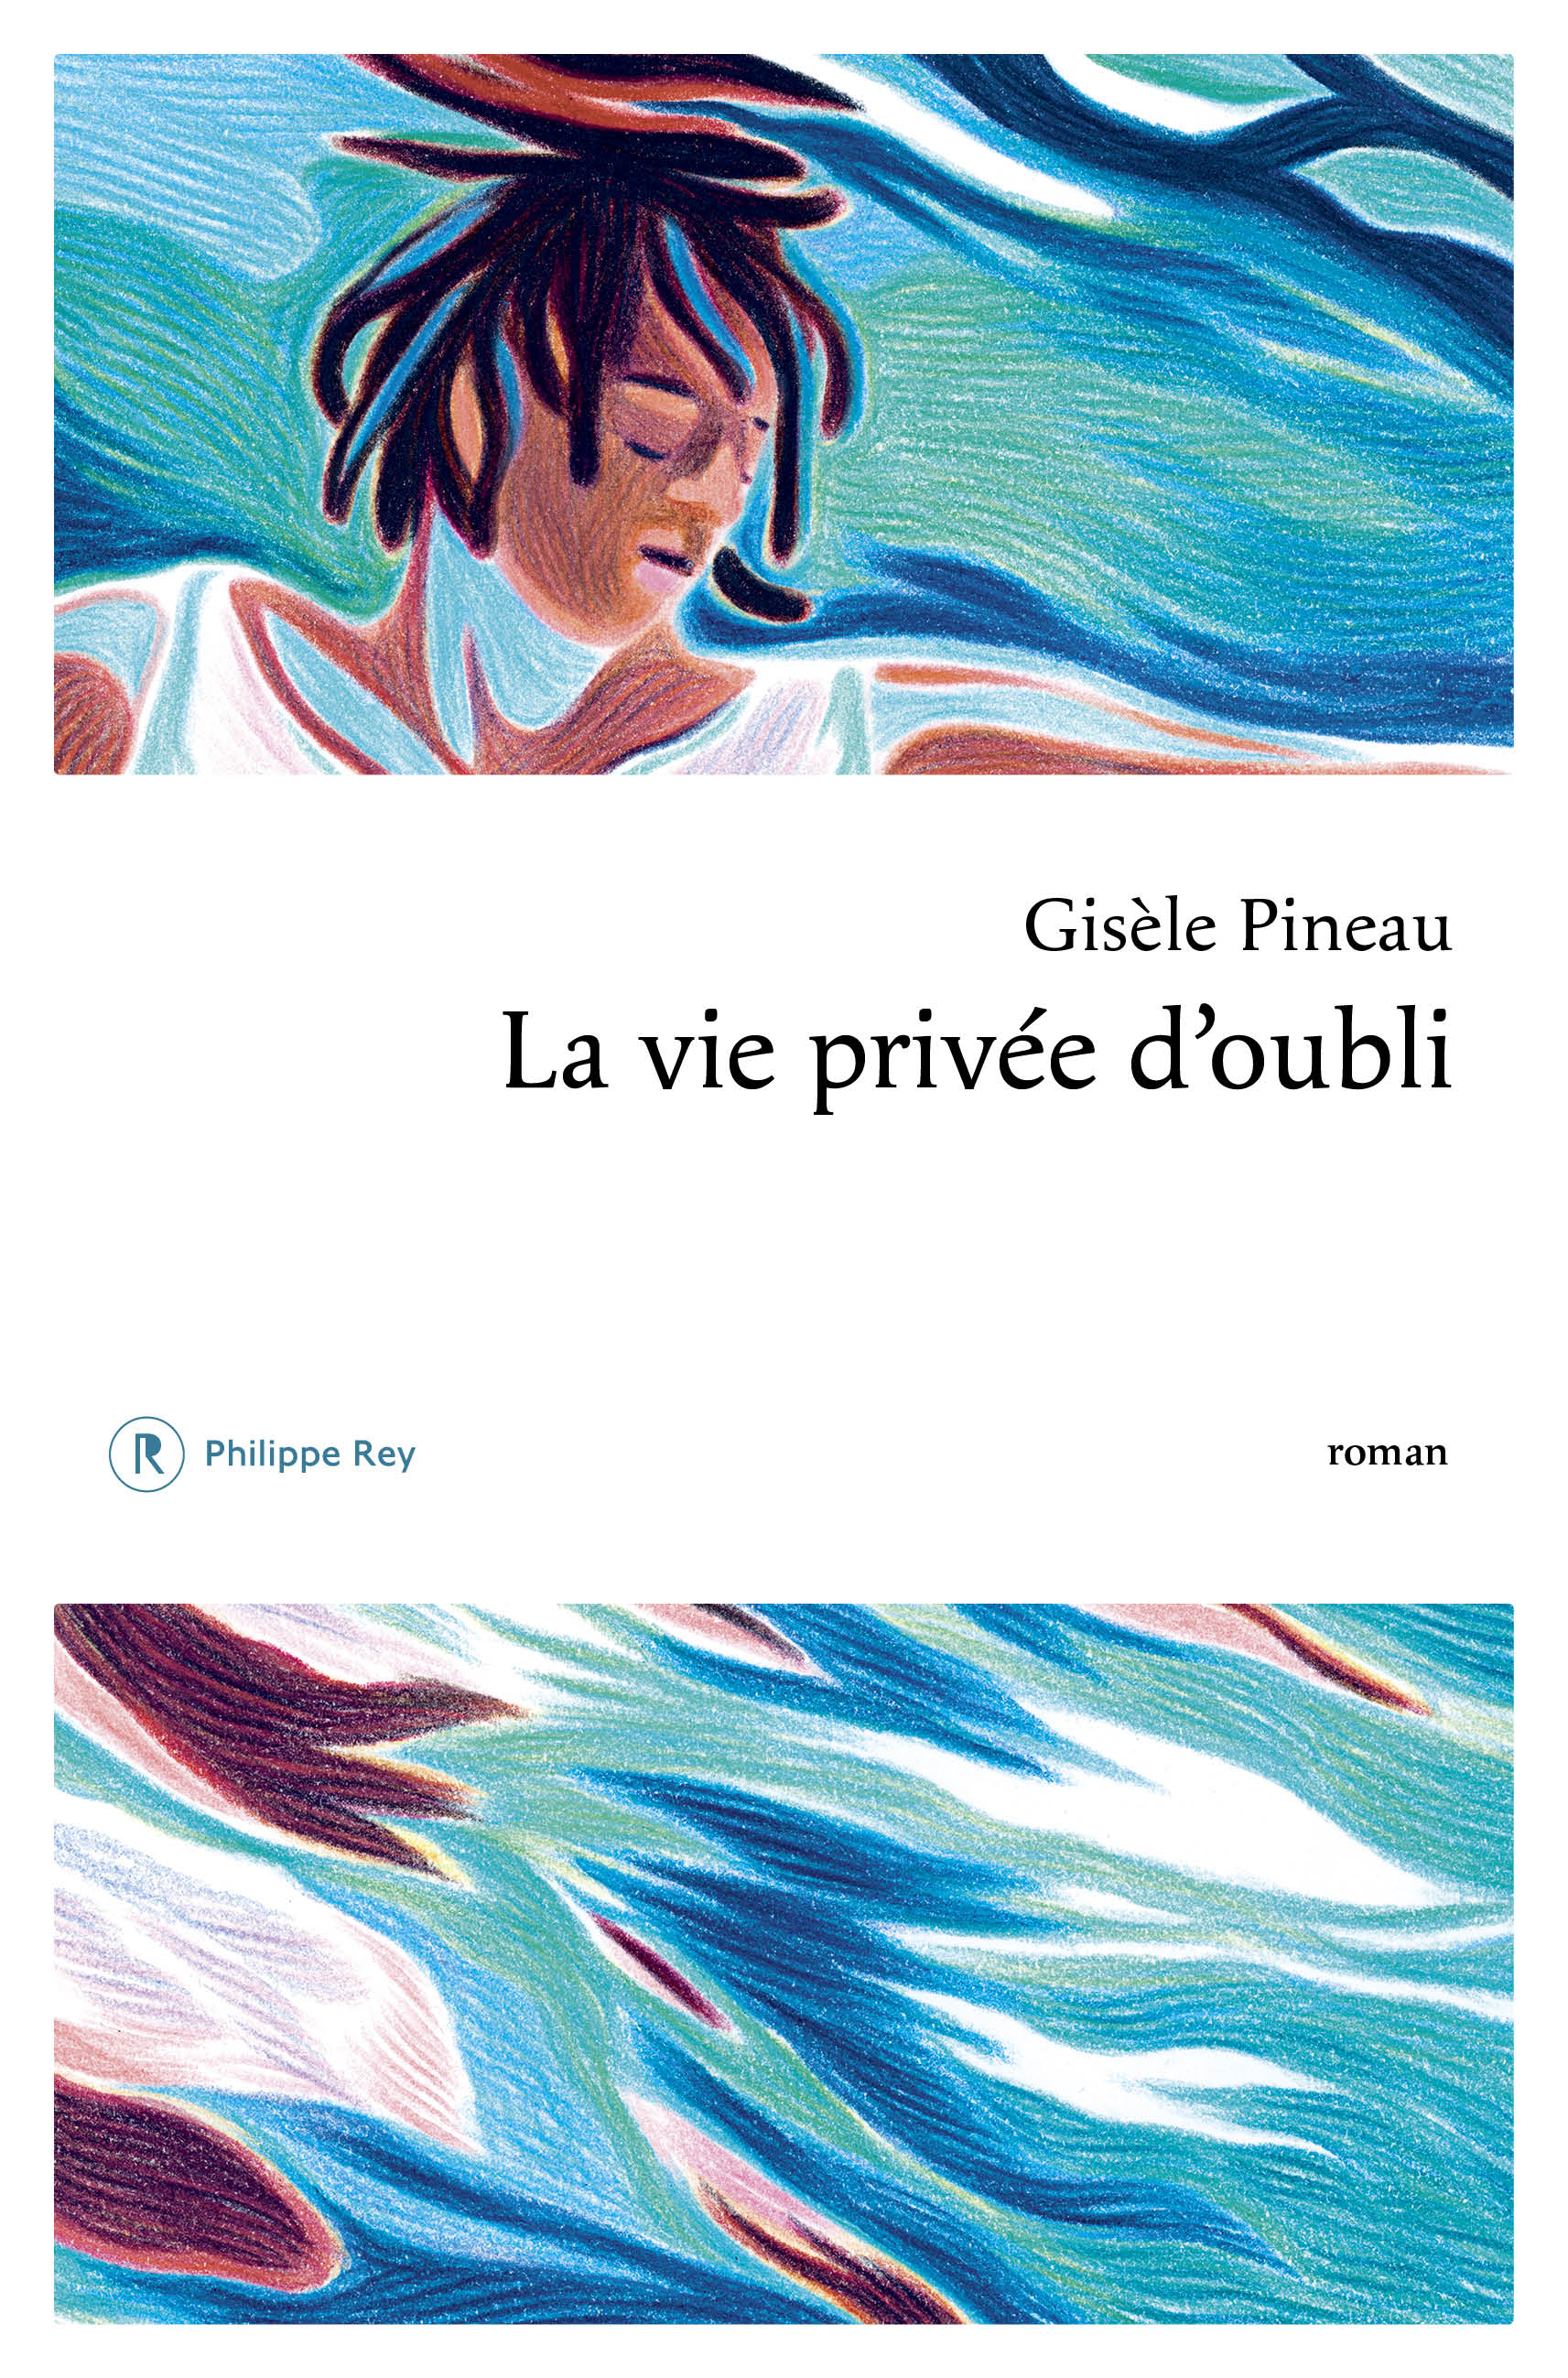 "La vie privée d'oubli" le nouveau roman de l'écrivaine guadeloupéenne Gisèle Pineau 